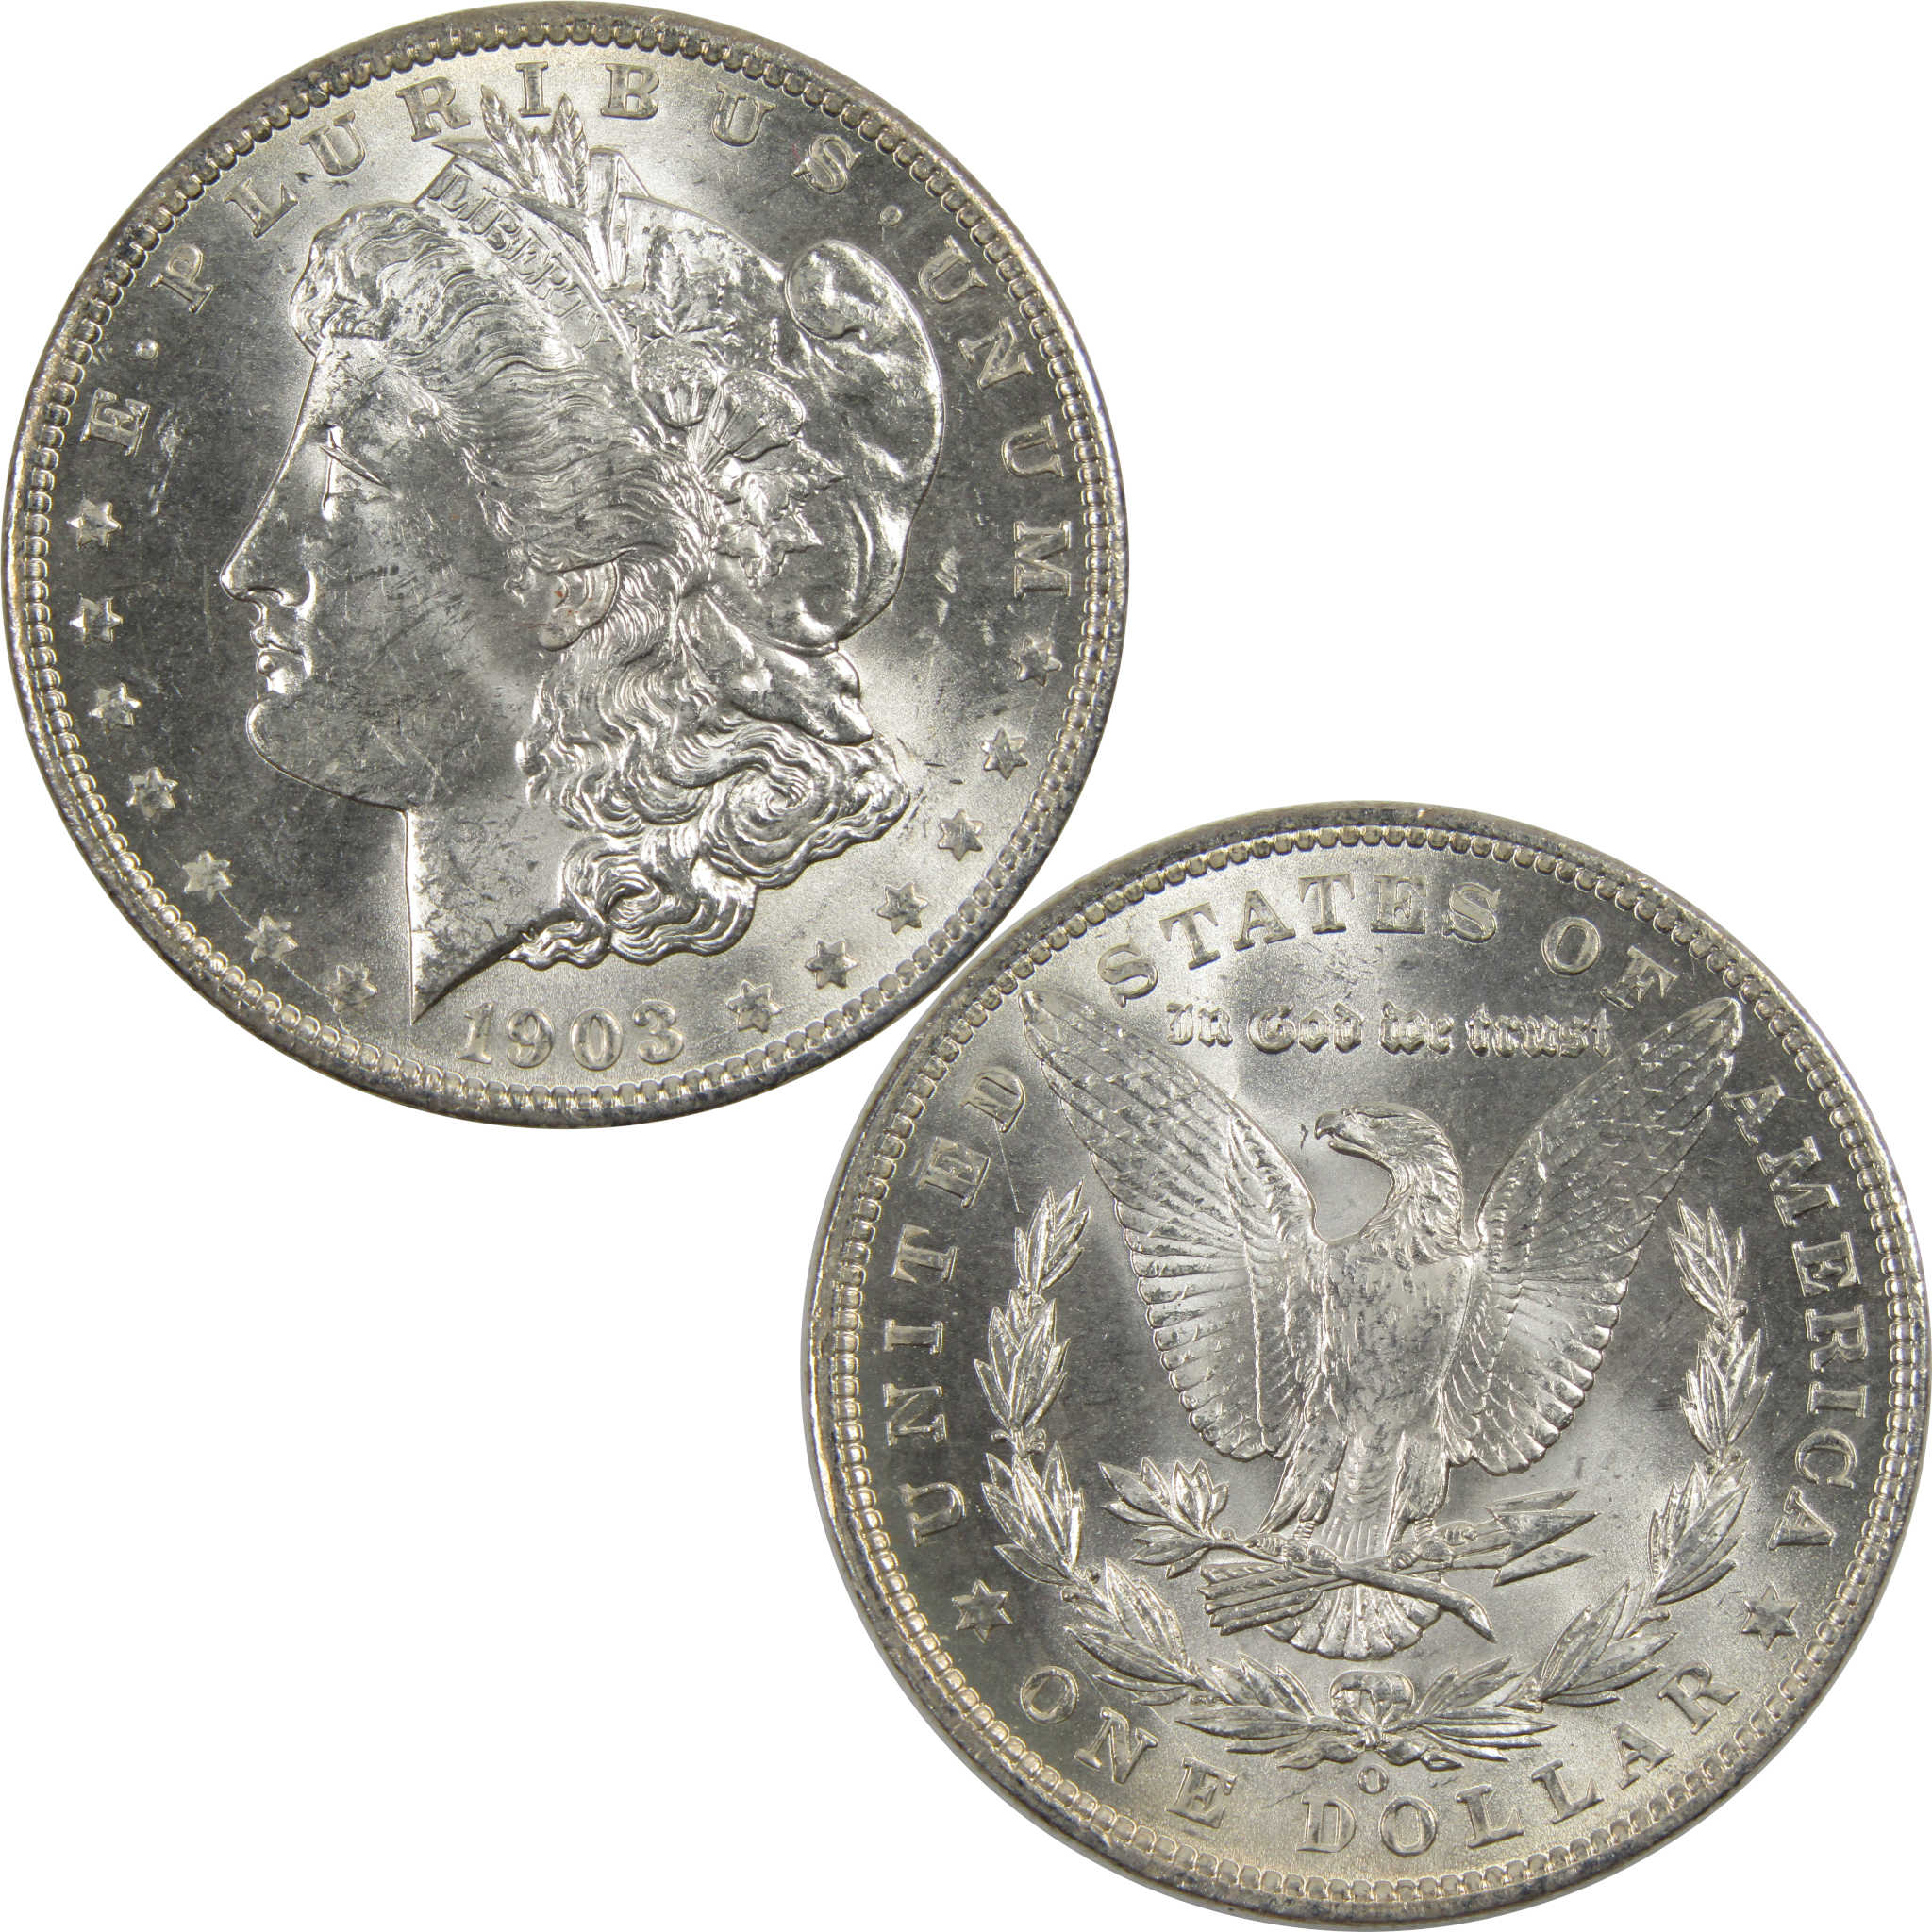 1903 O Morgan Dollar BU Choice Uncirculated 90% Silver $1 SKU:I7915 - Morgan coin - Morgan silver dollar - Morgan silver dollar for sale - Profile Coins &amp; Collectibles